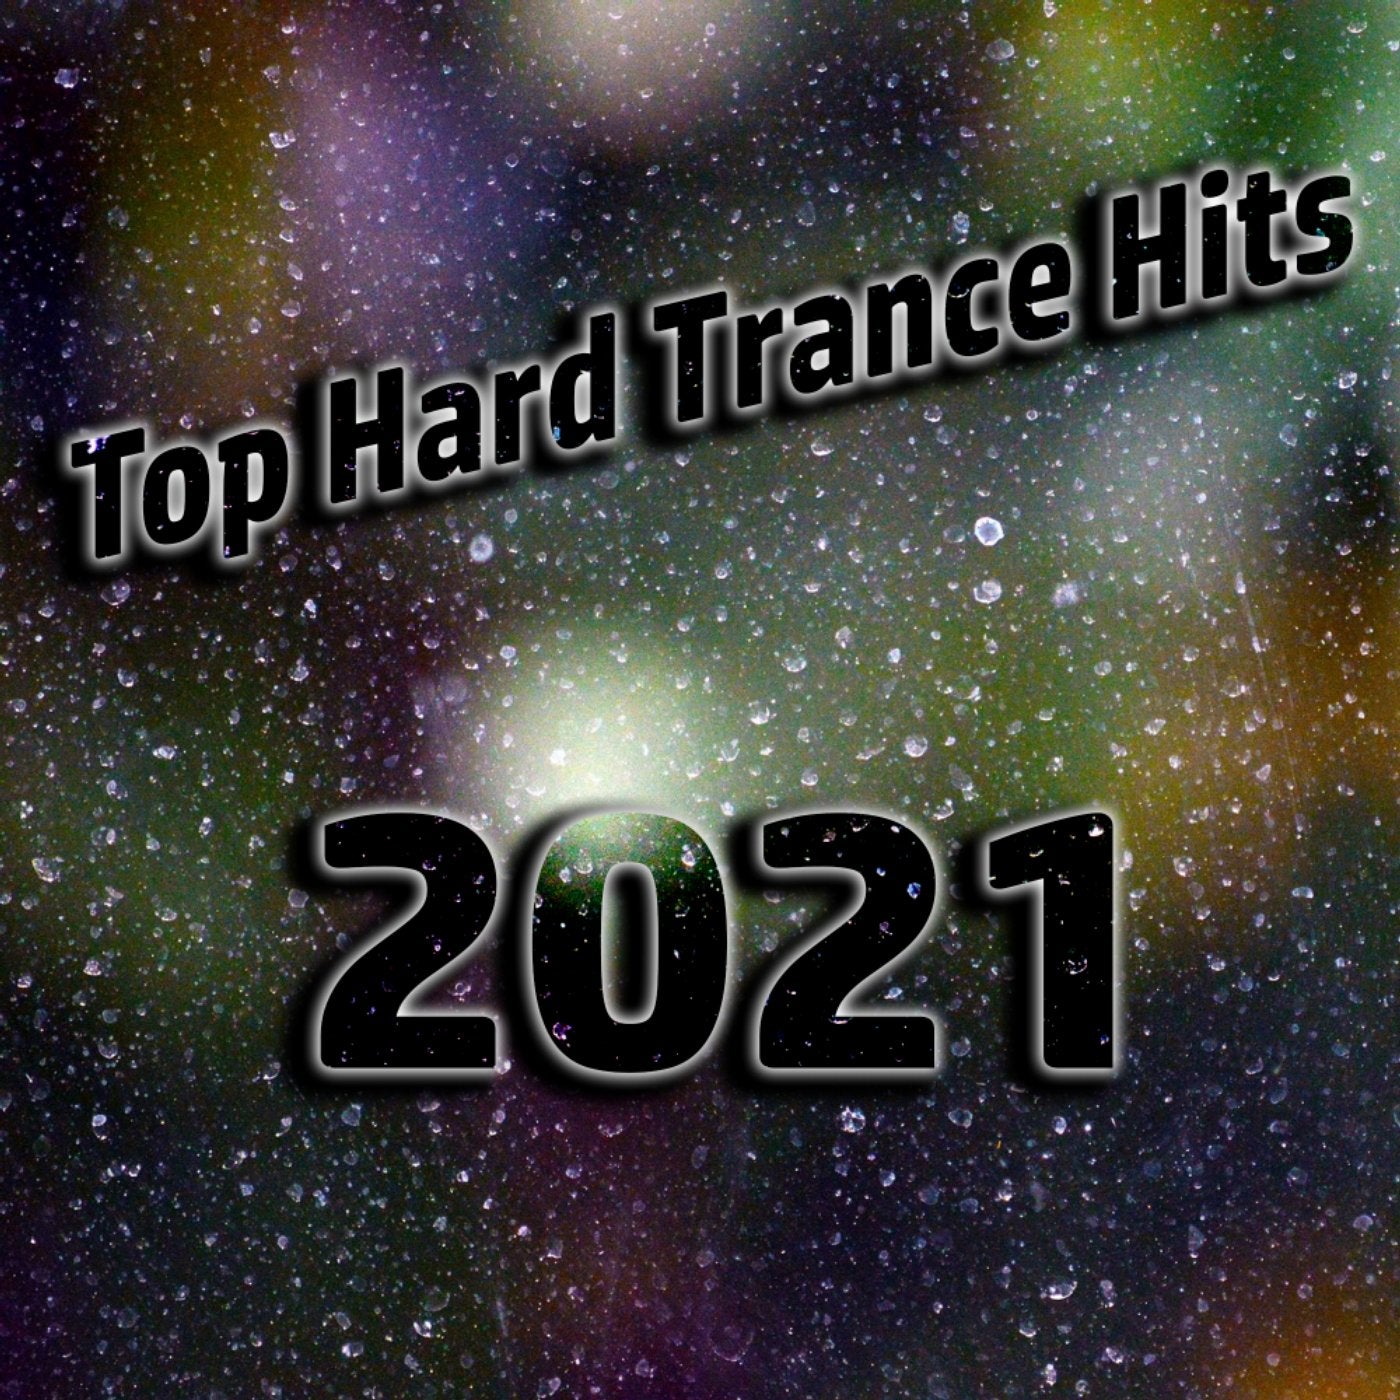 Top Hard Trance Hits 2021